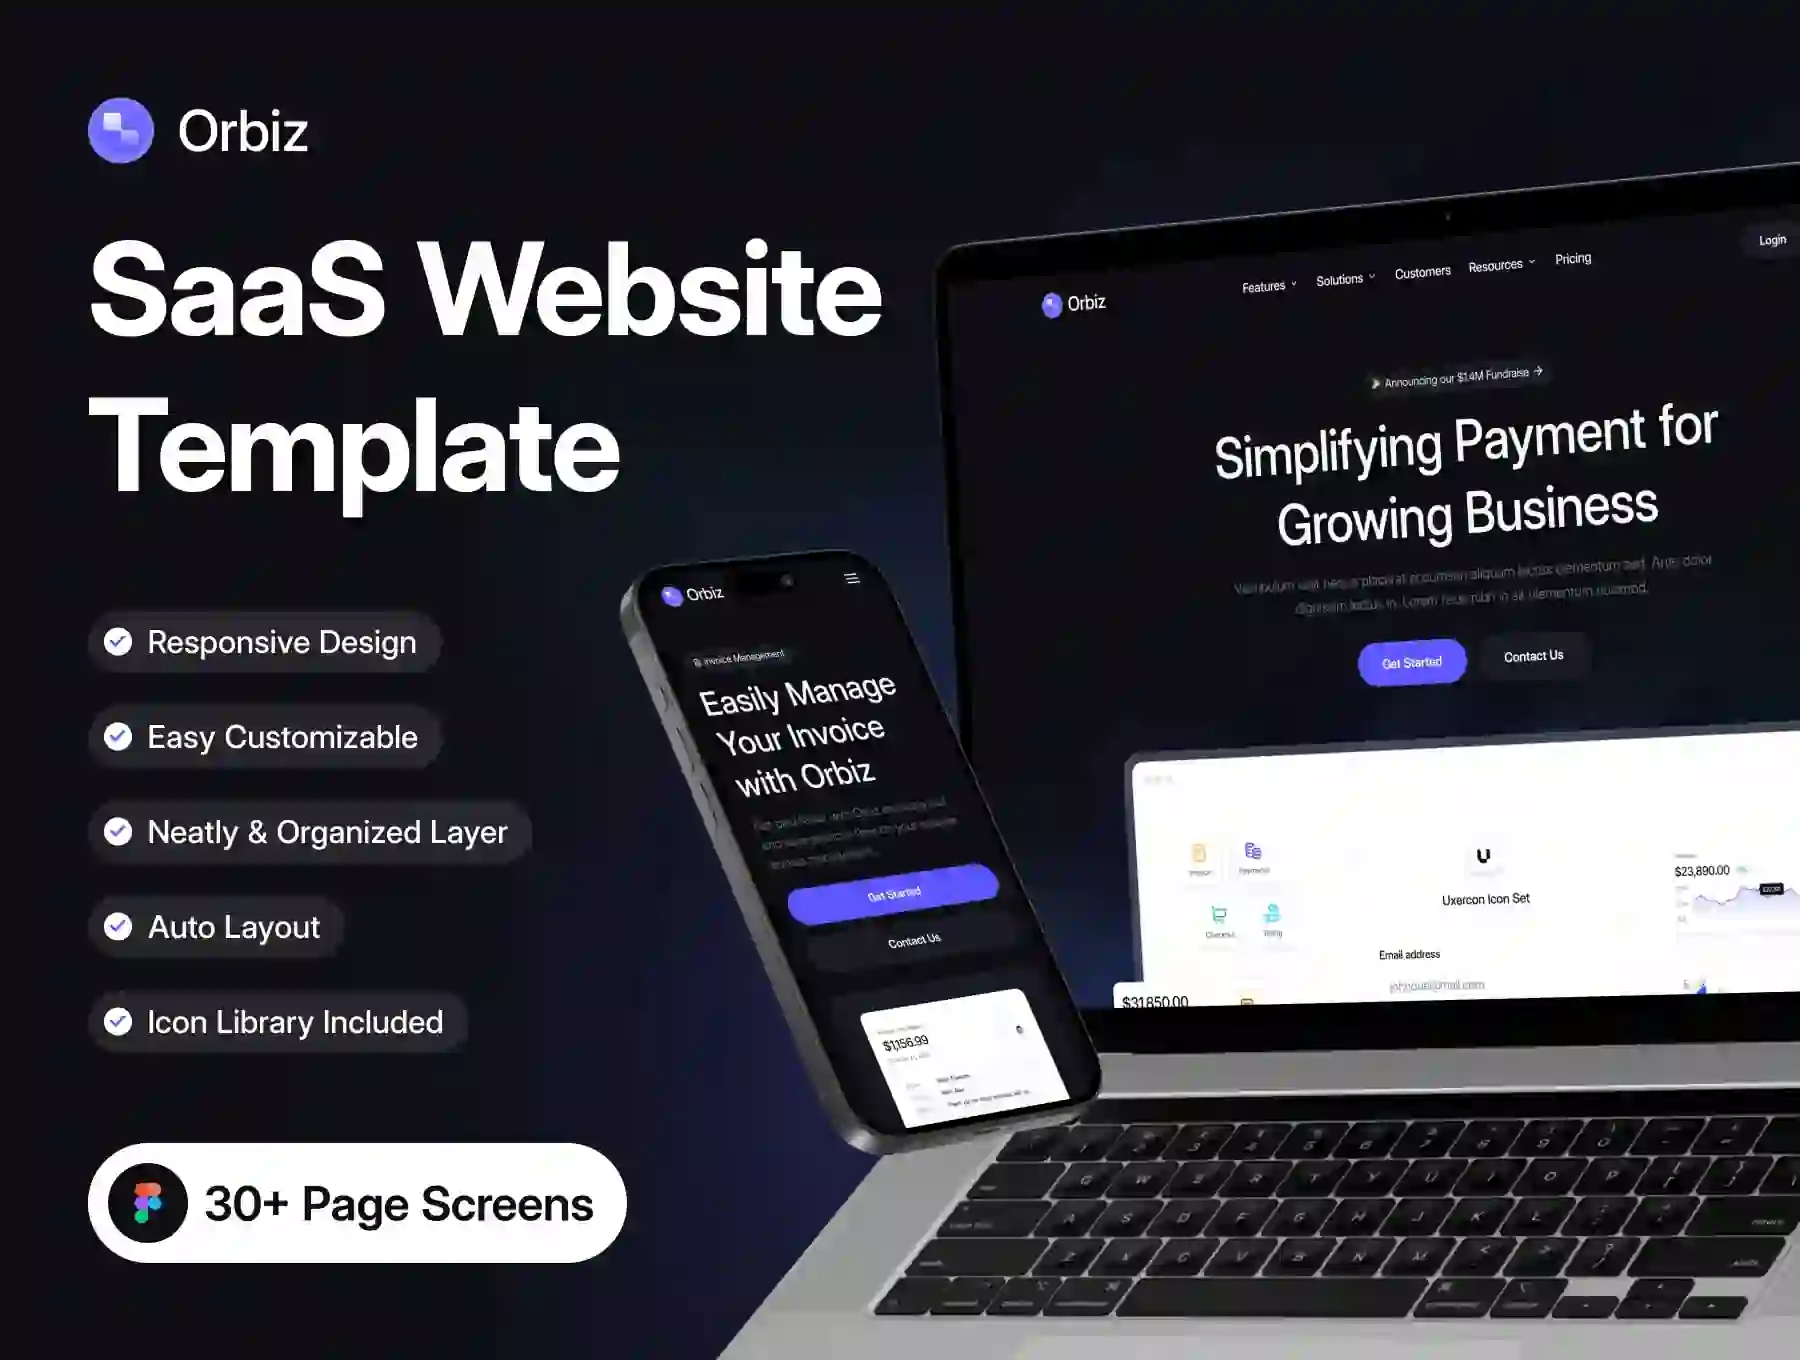 Orbiz - SaaS - Website Template UI Kit